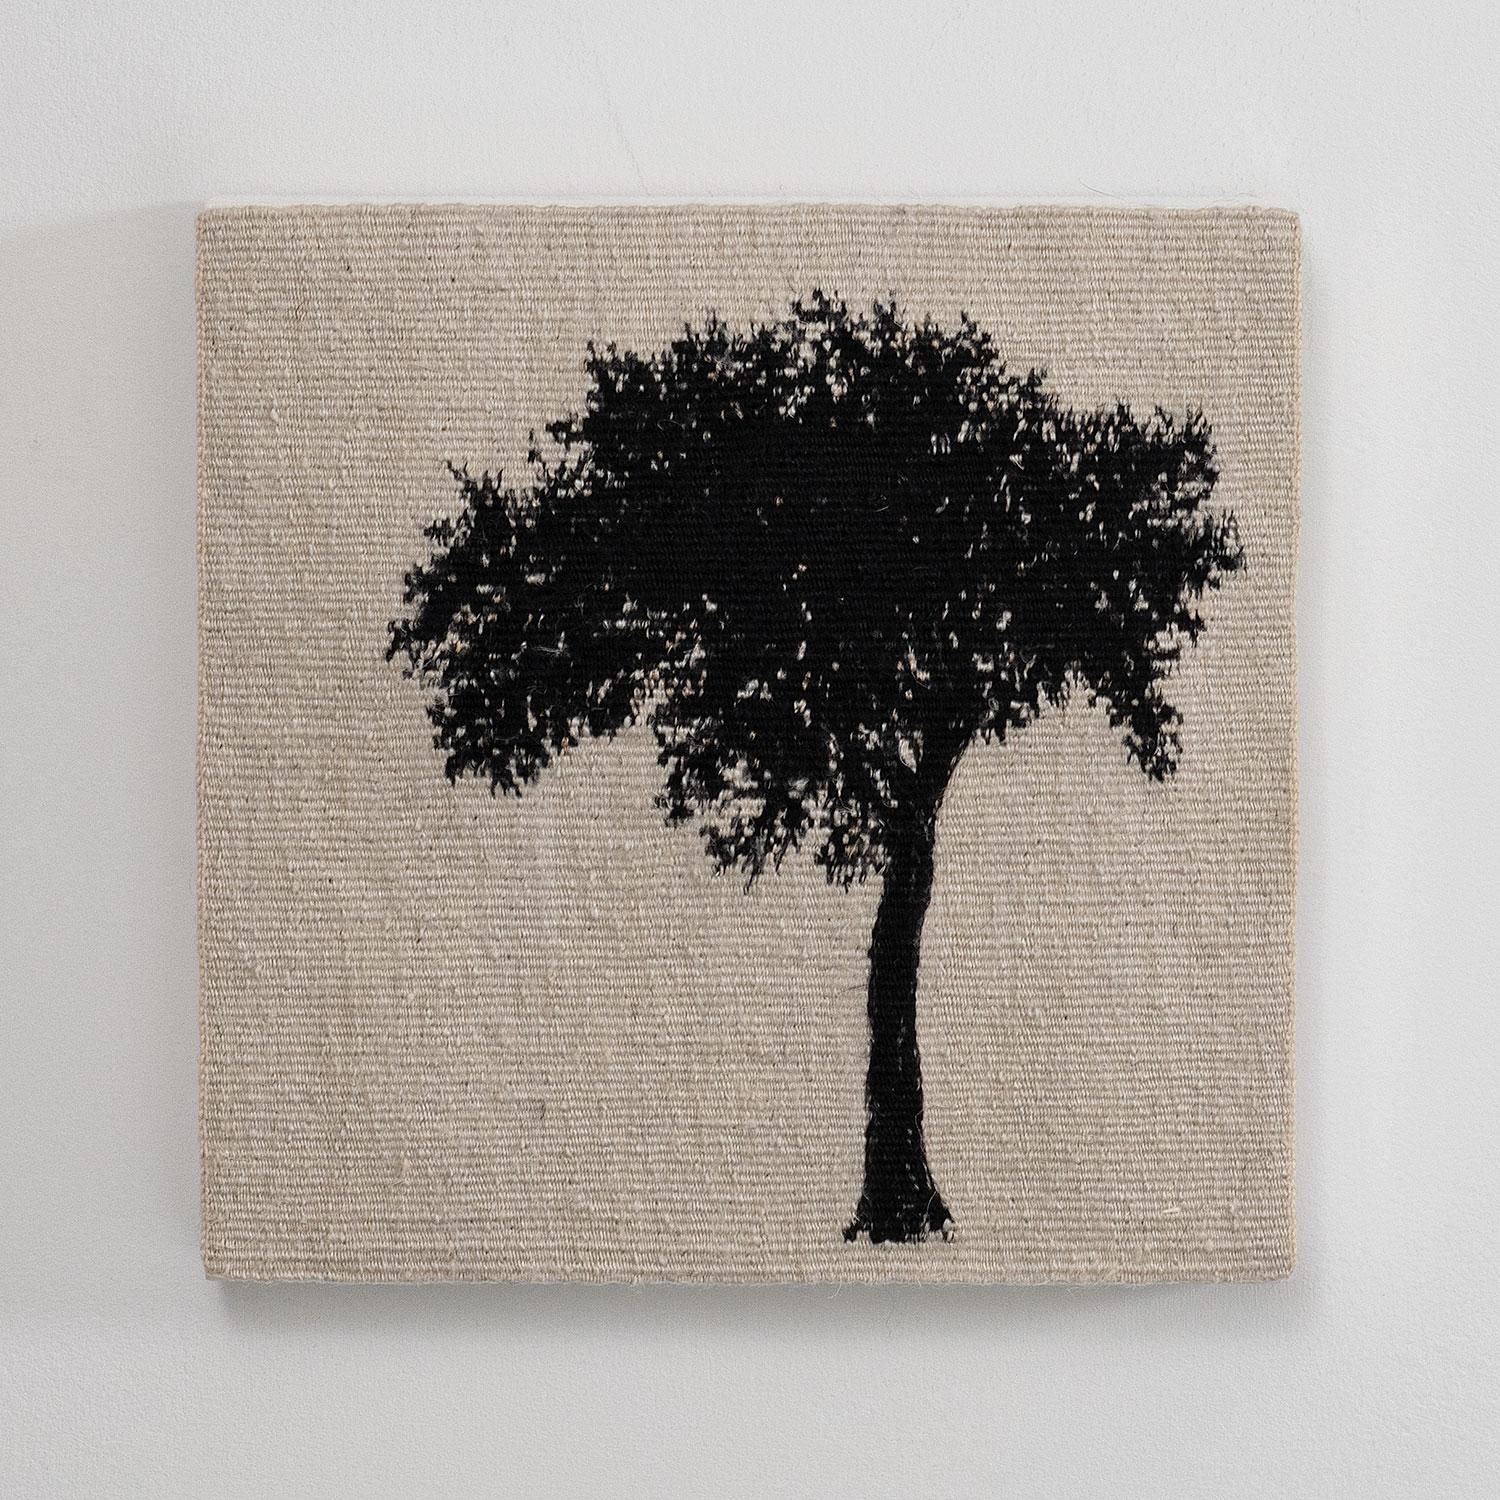 Journey Trees IV, Leinen und Schwungfäden, 7,5" x 8" x 1", 2021.

Diese figurative gewebte Textilarbeit stammt von der britischen Textilkünstlerin Sara Brennan (geb. 1963, Edinburgh, Schottland). Sie sagt: "Journey Trees ist eine Serie von